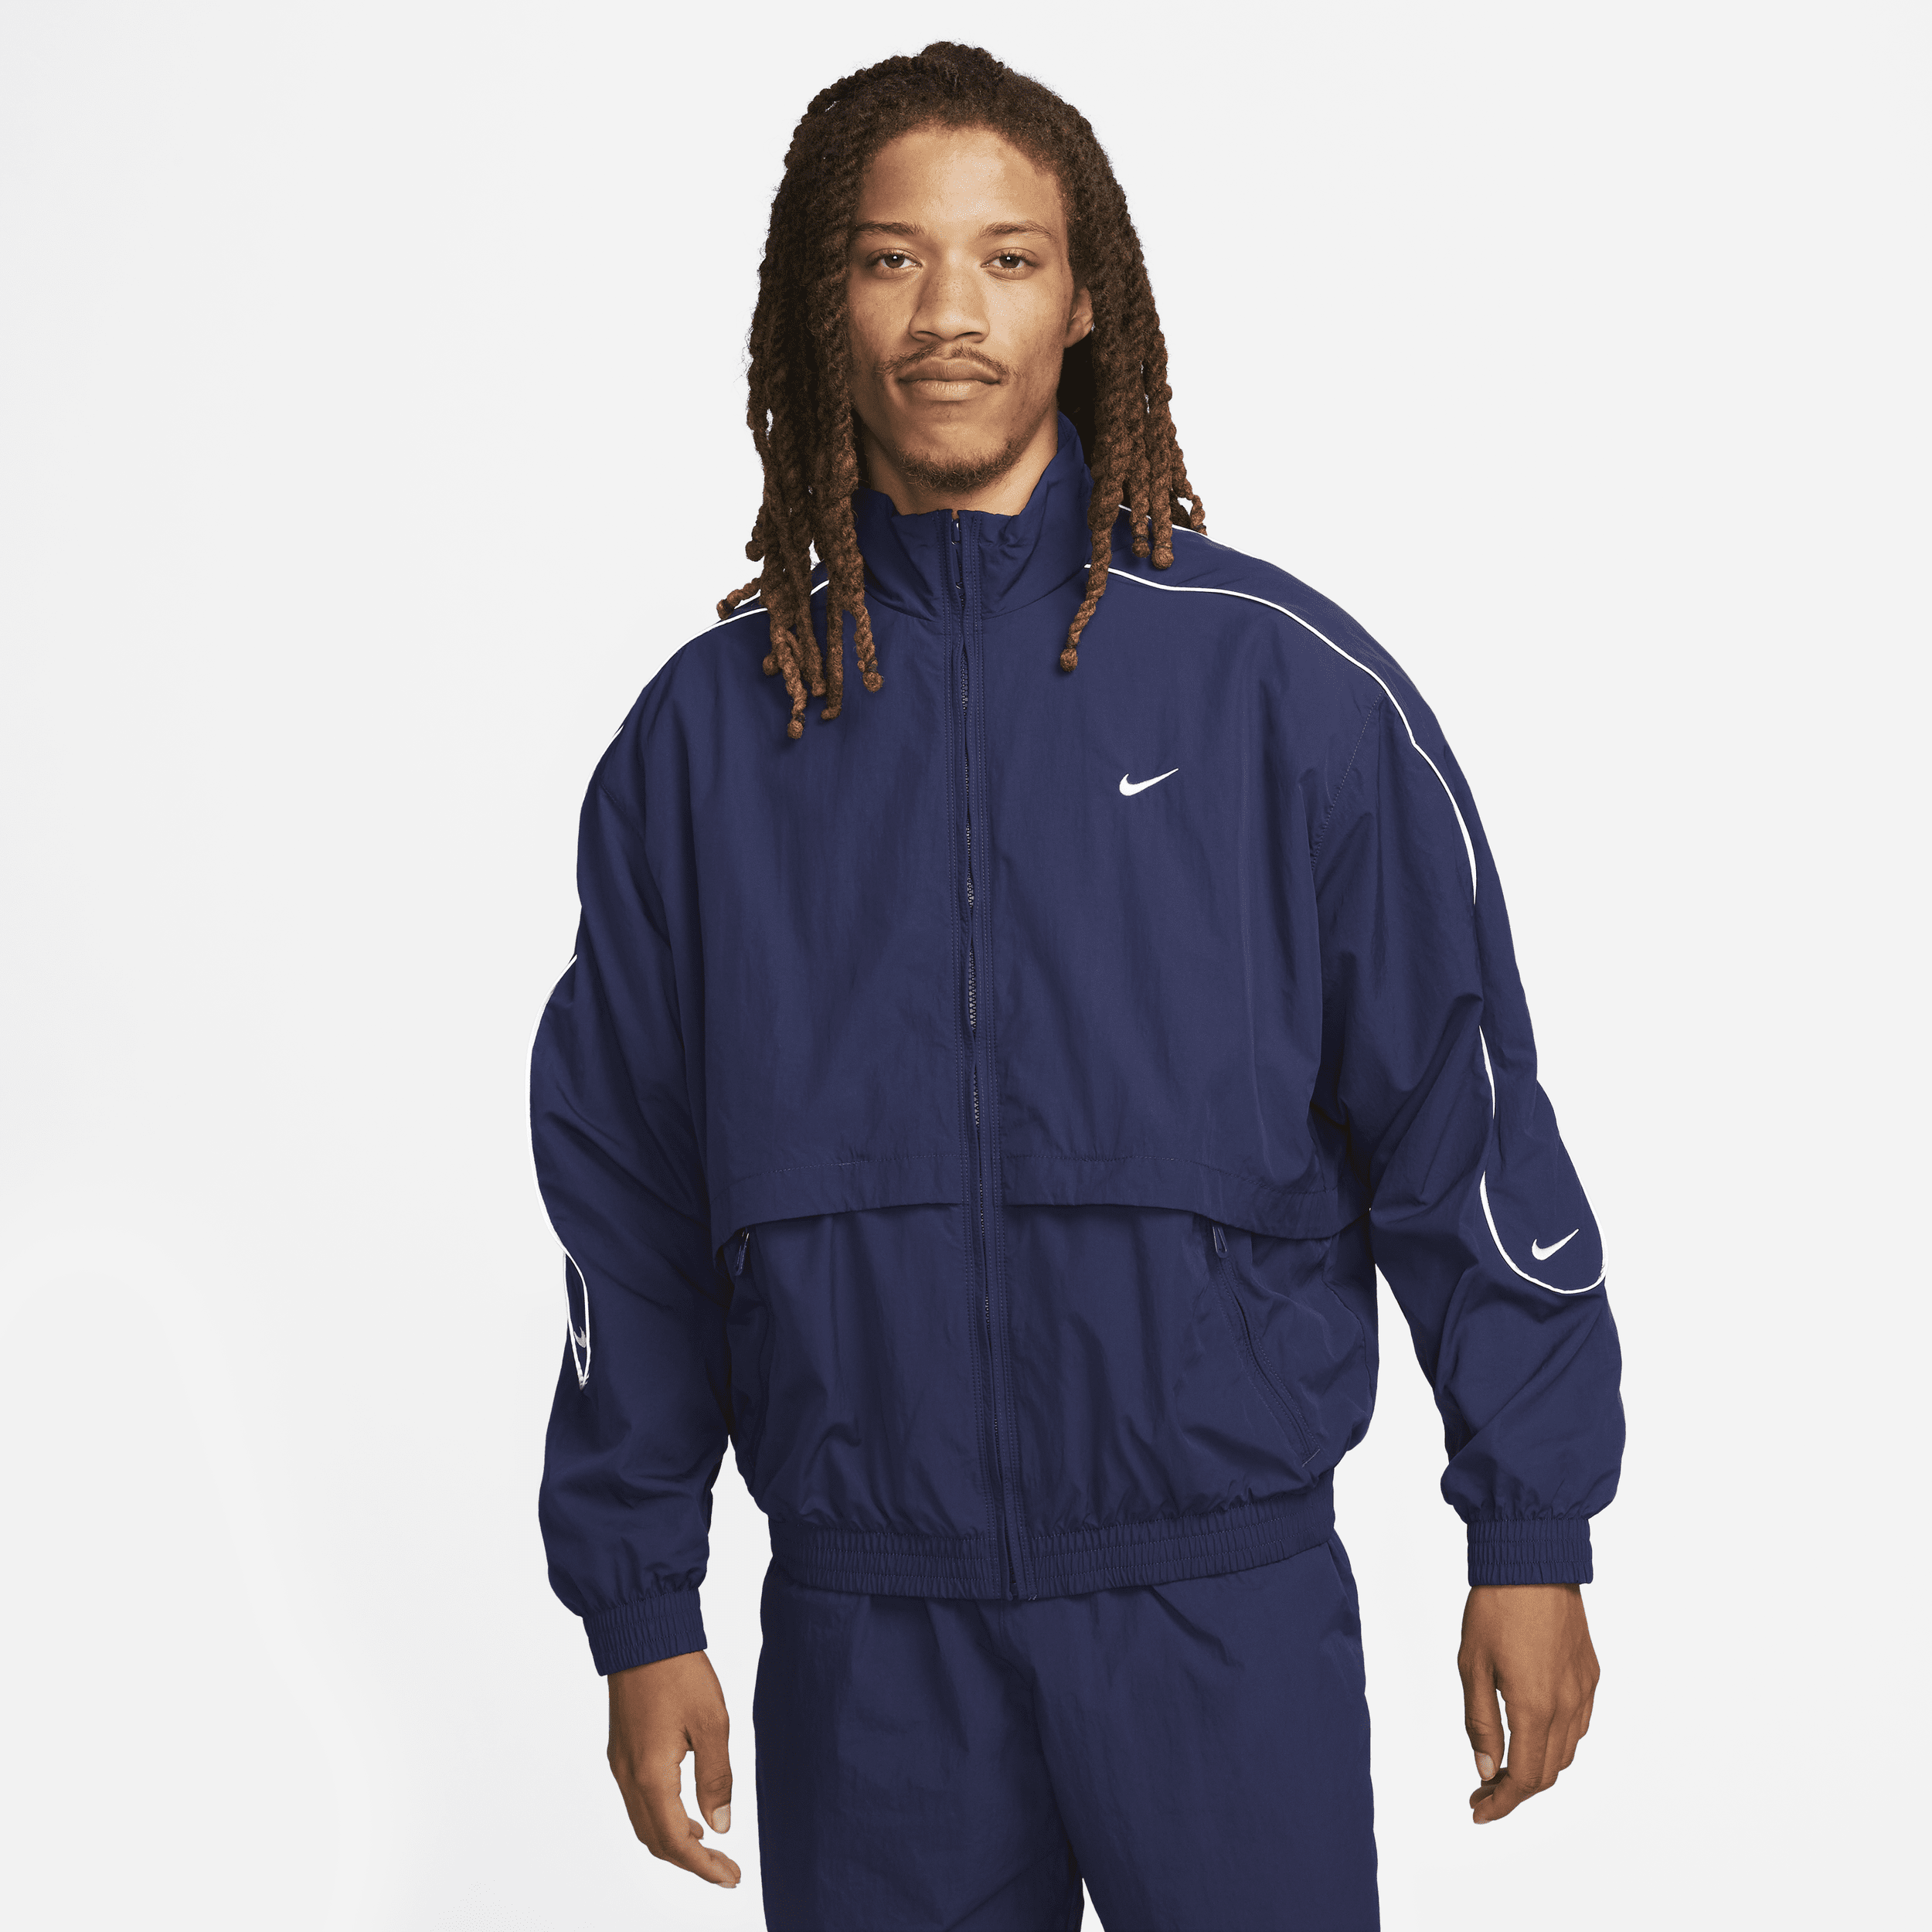 Vævet Nike Sportswear Solo Swoosh-løbejakke til mænd - blå